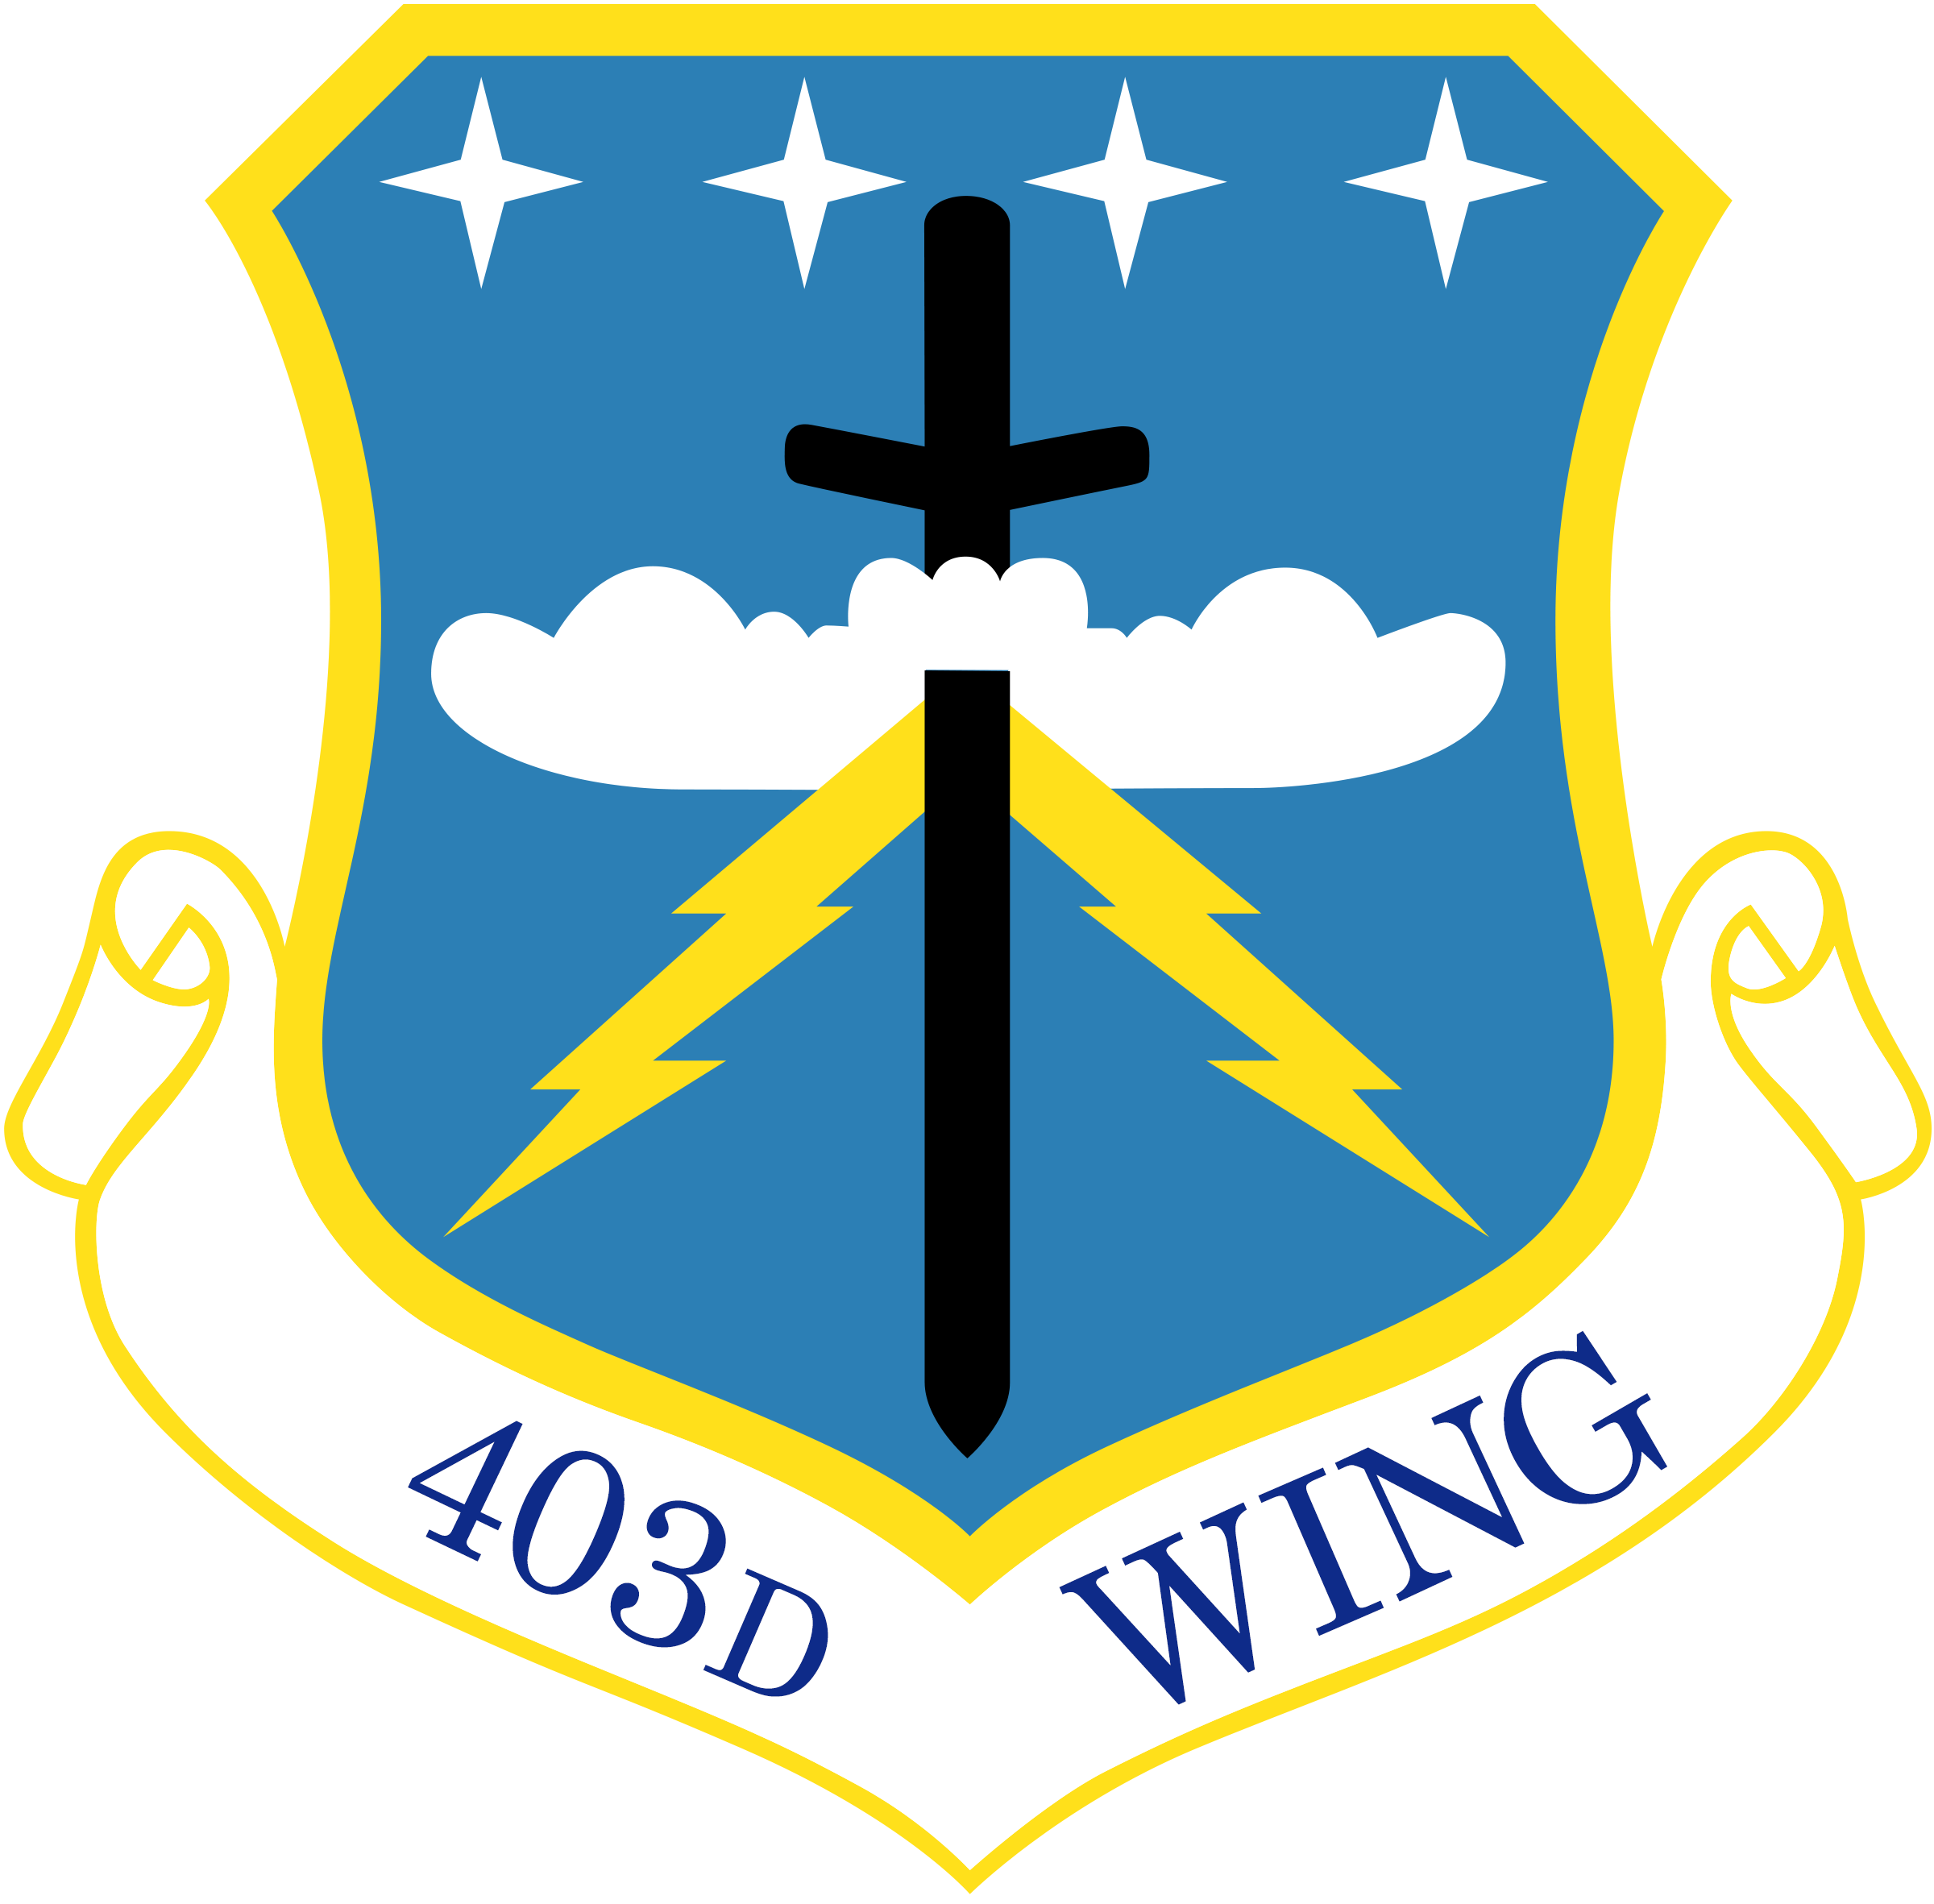 403rd Wing emblem